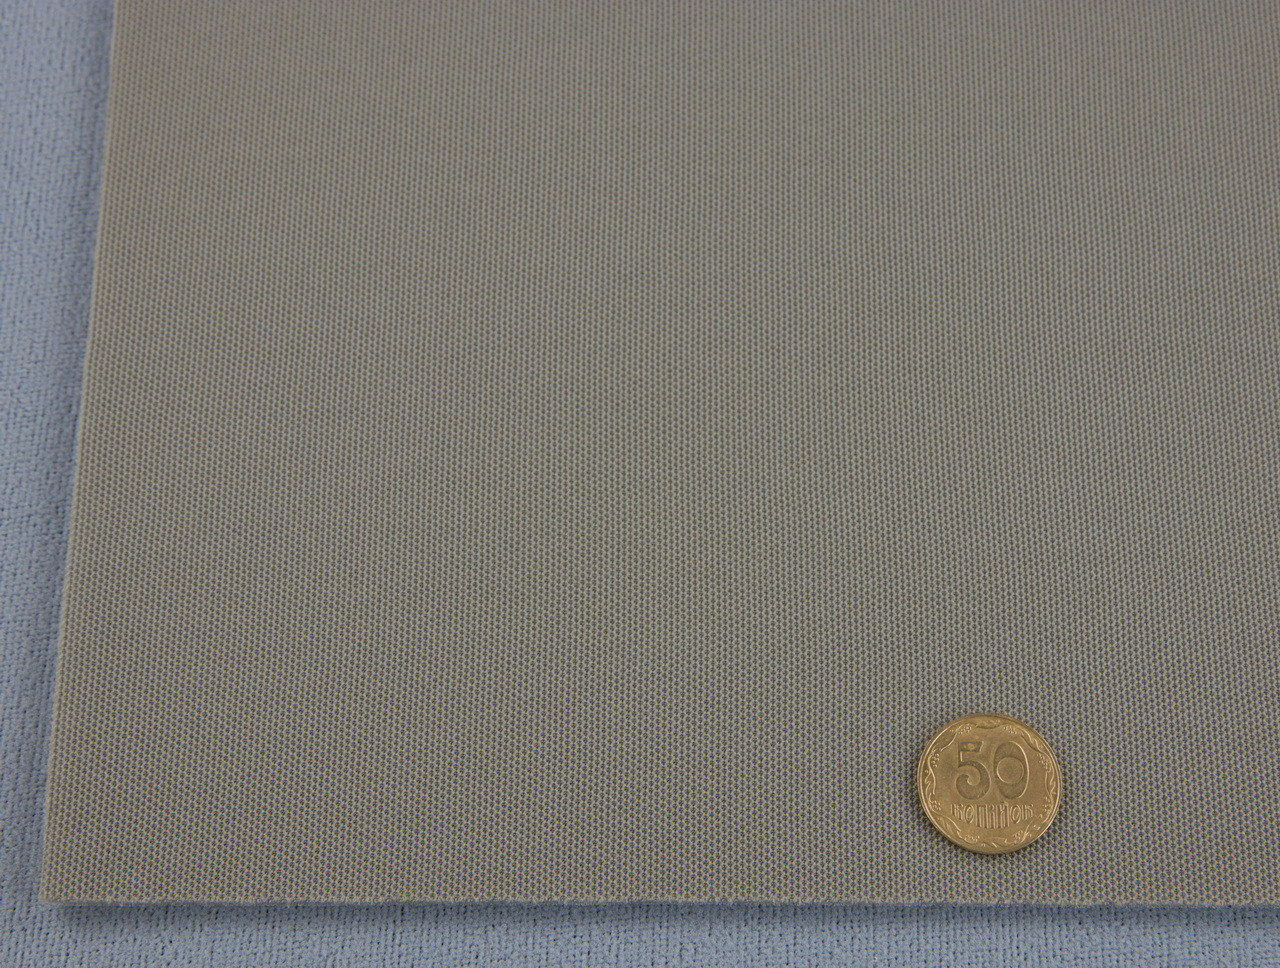 Автоткань потолочная Lacost D56, цвет ореховый на поролоне, толщина 3мм, ширина 170см, Турция детальная фотка